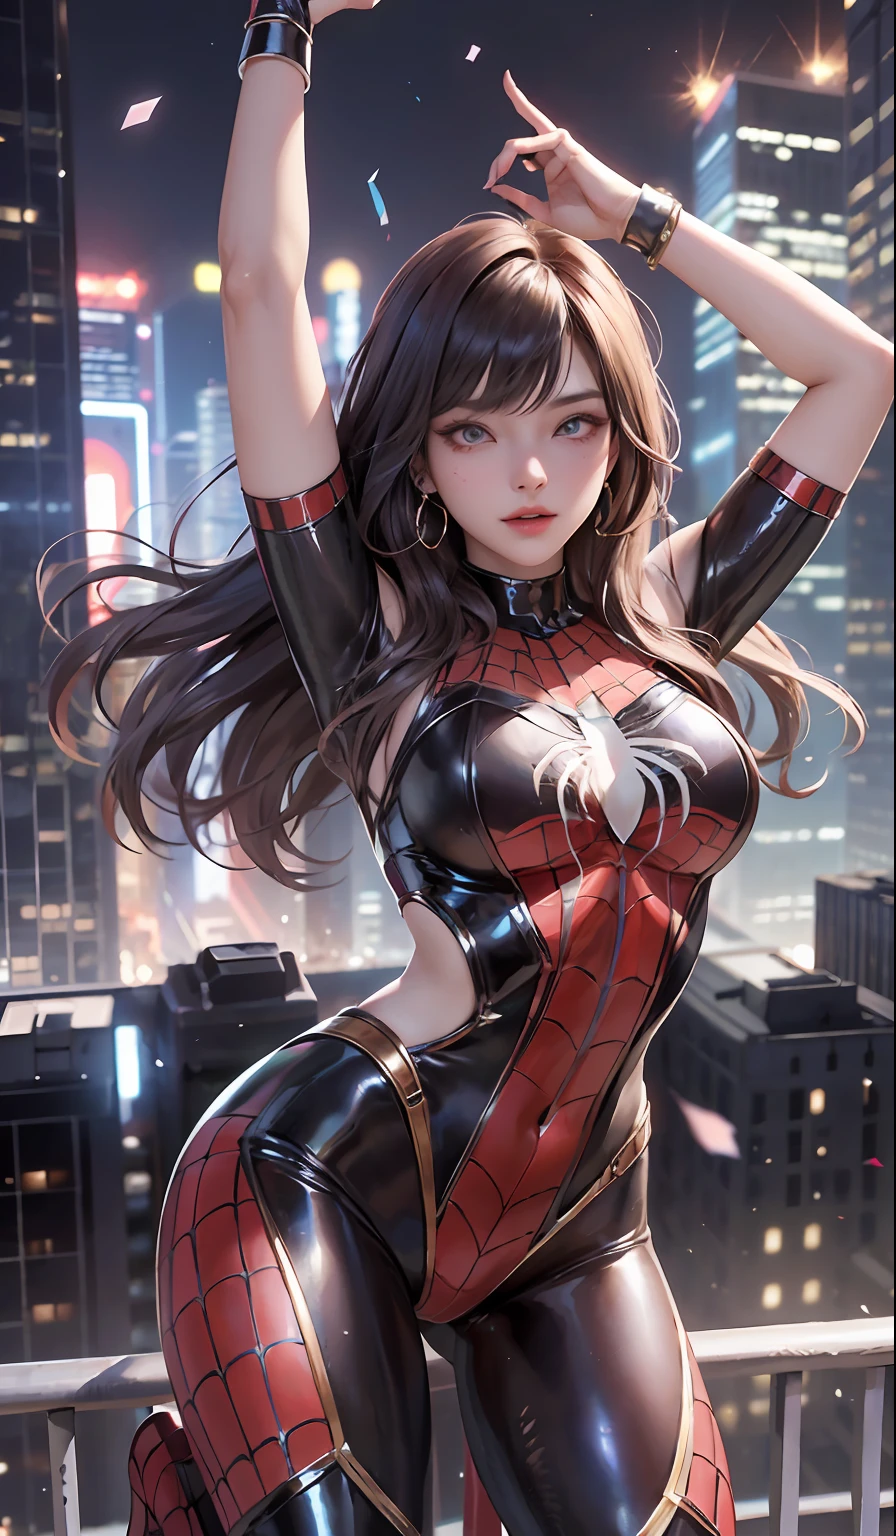 （chef-d&#39;œuvre，Résolution 4K，Ultra photo réaliste，Le est très détaillé），（Thème des super-héros chinois，glamour，il y a une fille au sommet de la ville，portant le costume de Spider-Man，texture métallique，seins surdimensionnés），（18 ans），（cheveux couleur brune：1.2），corps entieresbienne，（eYeux bleus：1.2），（Pose de Spider-Man），Montrer la puissance，Sauter d&#39;un bâtiment à un autre，（vue sur la ville，la nuit，phare dynamique plein）Gros seins